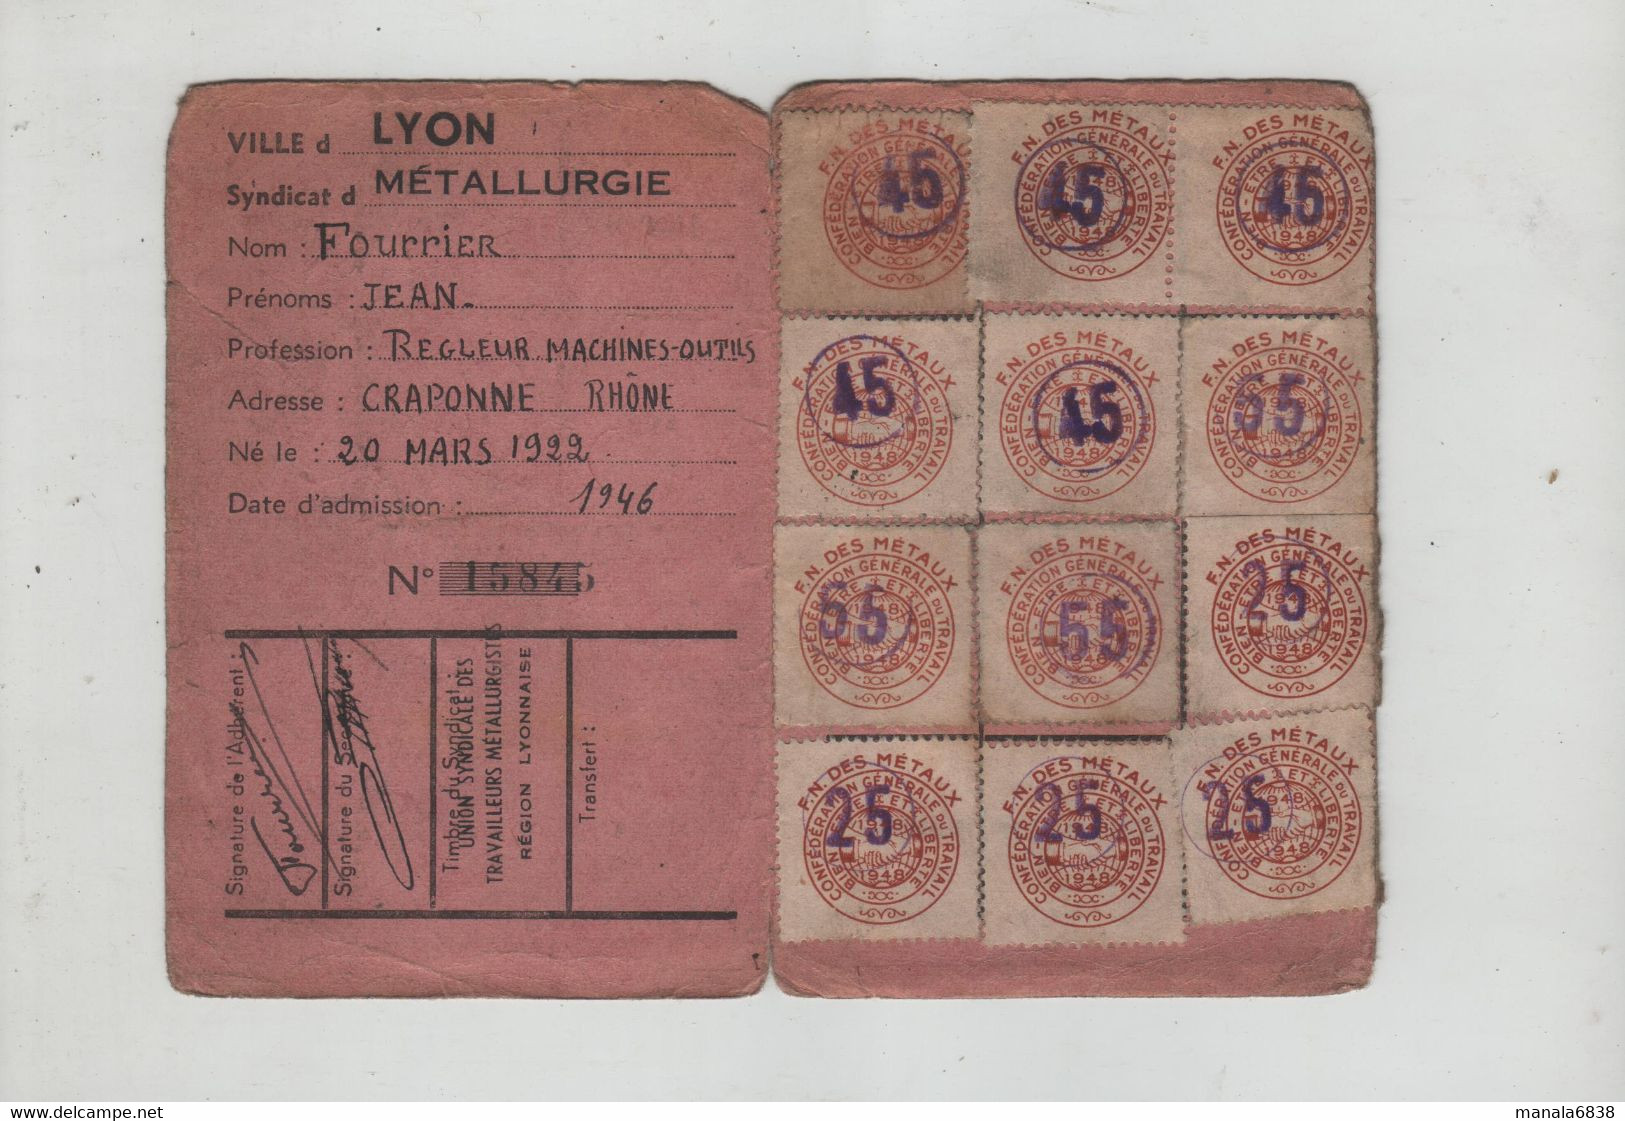 Carte Confédérale 1948 CGT Métallurgie Fourrier Régleur Machines Outils Craponne - Membership Cards